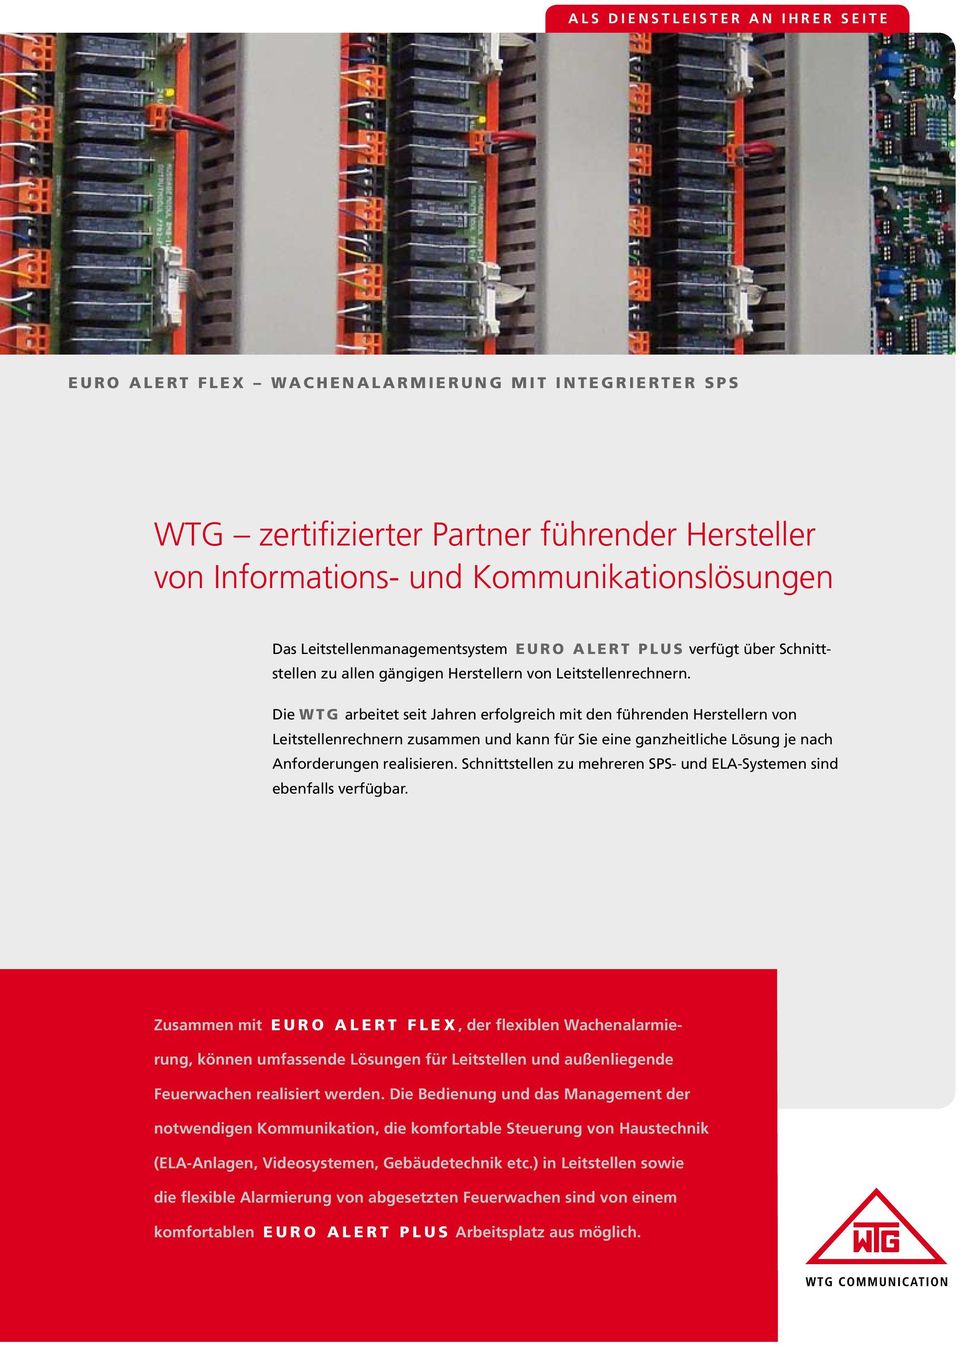 Die WTG arbeitet seit Jahren erfolgreich mit den führenden Herstellern von Leitstellenrechnern zusammen und kann für Sie eine ganzheitliche Lösung je nach Anforderungen realisieren.